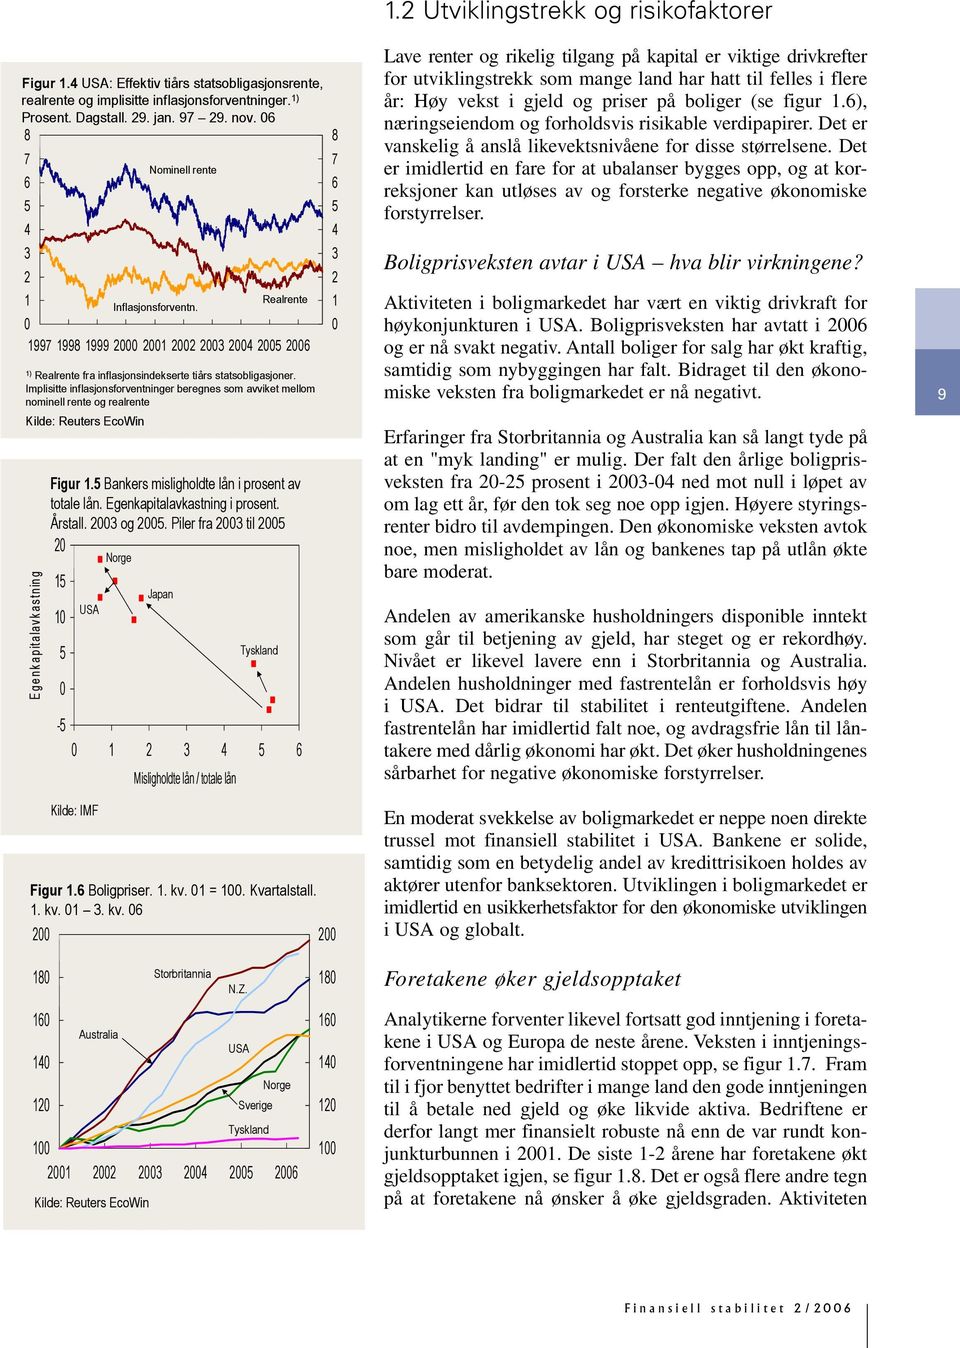 Implisitte inflasjonsforventninger beregnes som avviket mellom nominell rente og realrente Kilde: Reuters EcoWin E genkapitalavkastning Figur 1. Bankers misligholdte lån i prosent av totale lån.